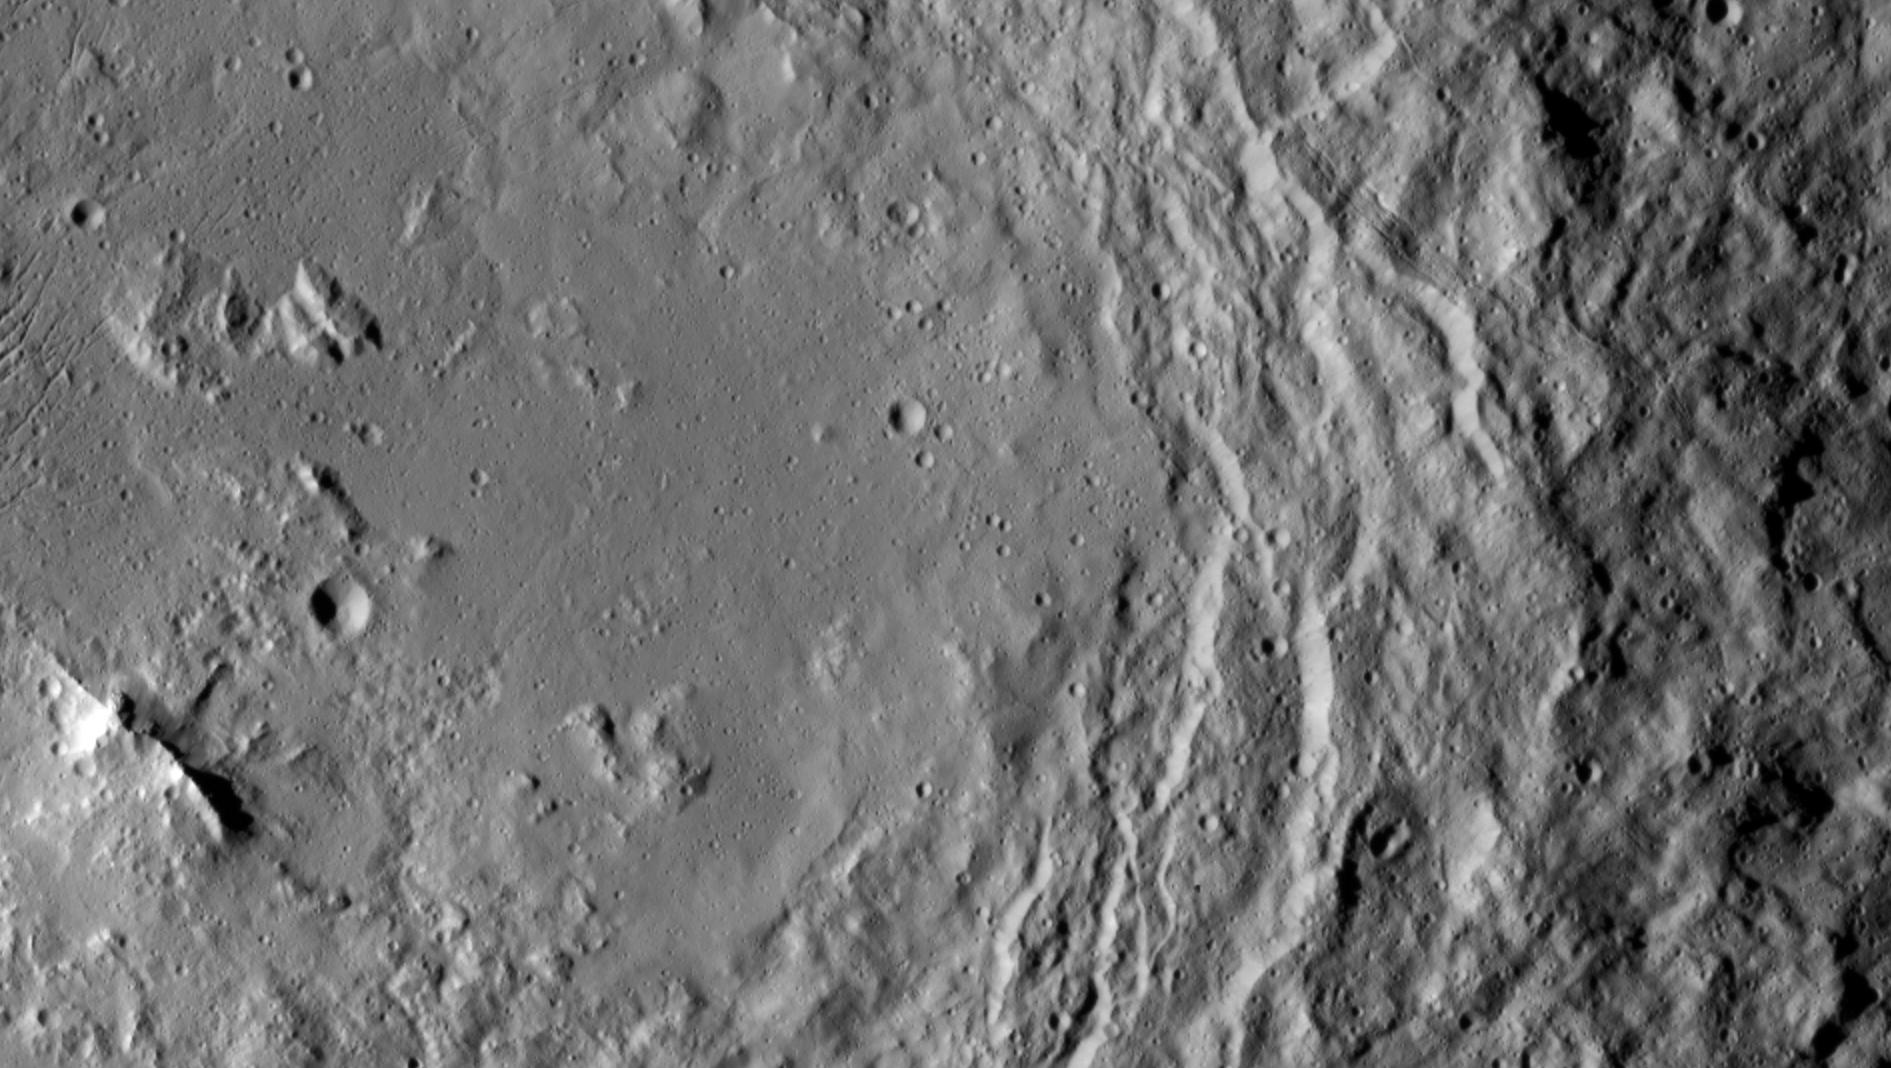 Uravara crater